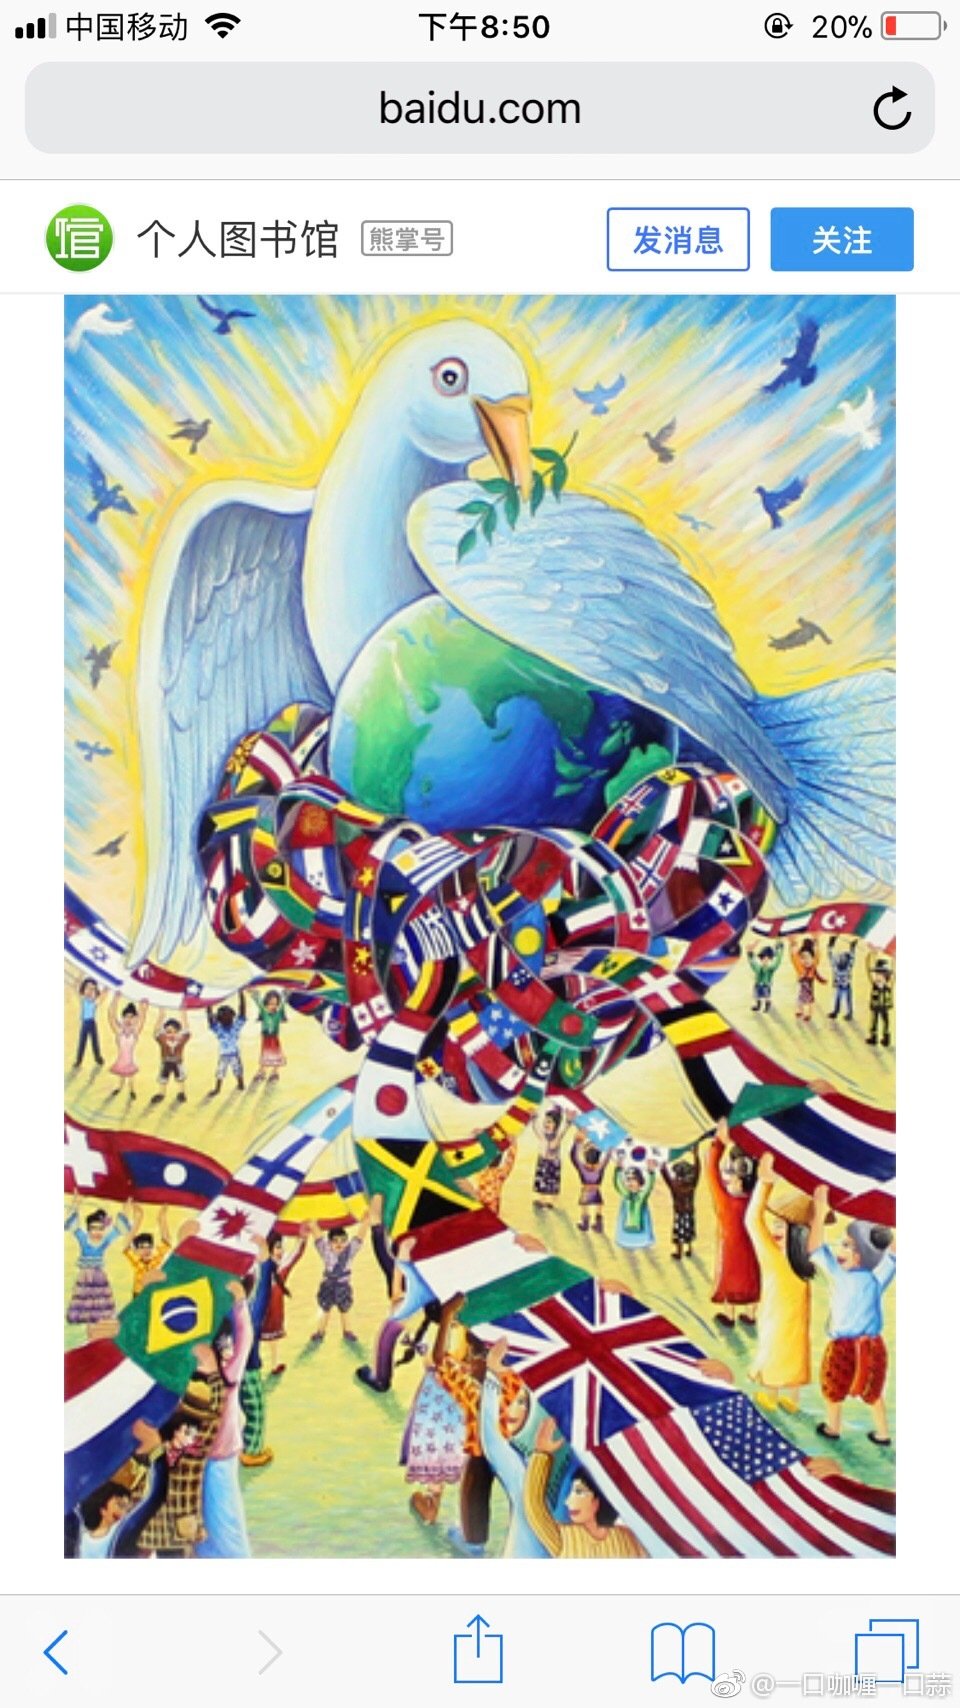 世界和平海报作品名称图片